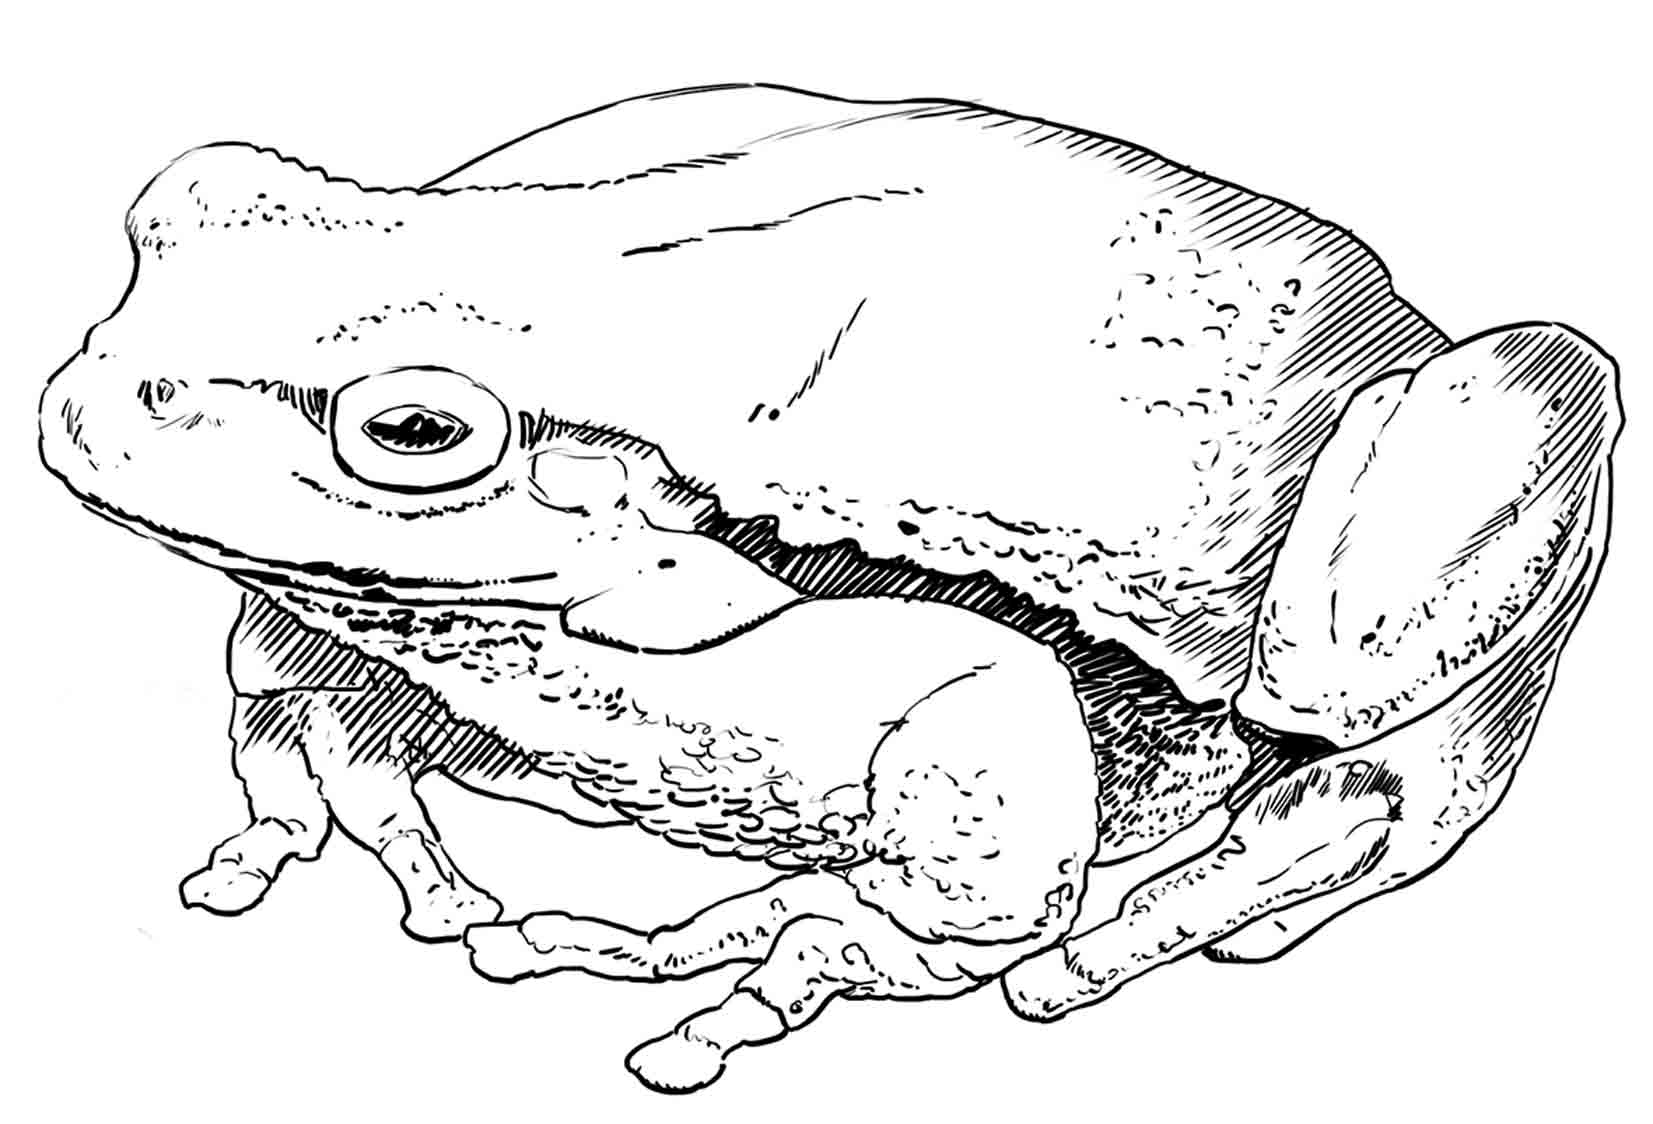 La grenouille et ses formes hors-norme. Un régal pour les dessinateurs, non ?